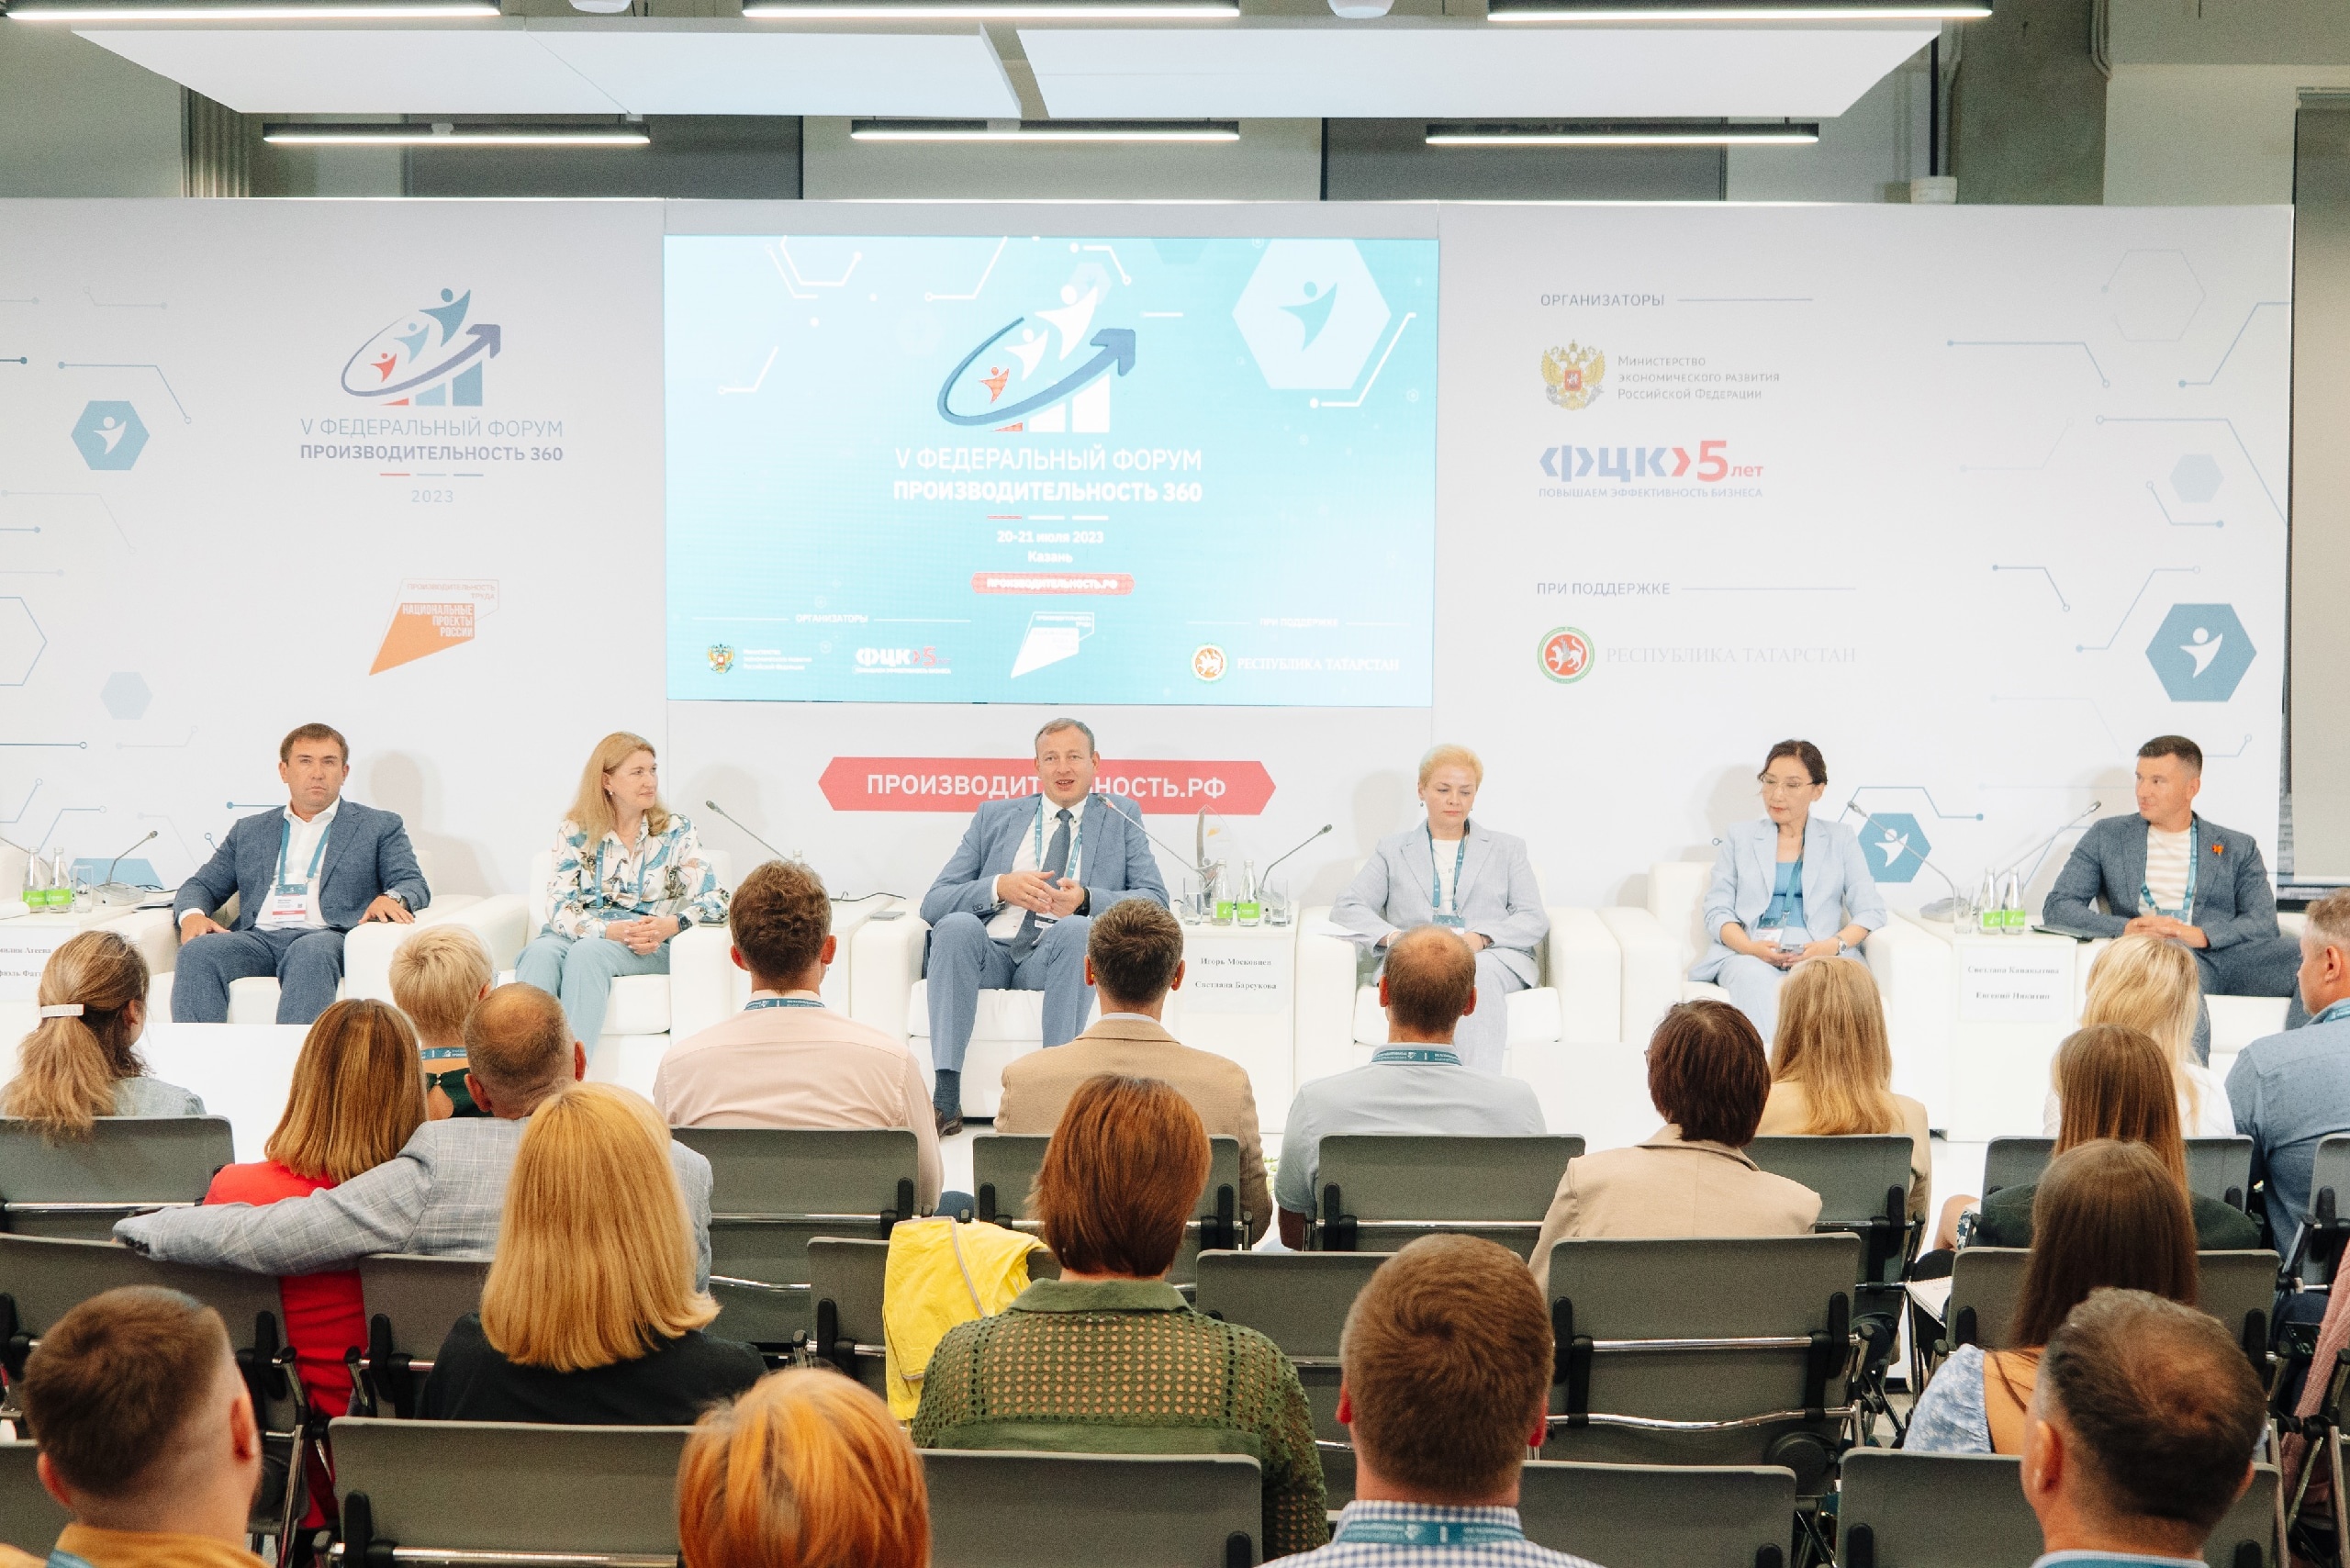 В столице Татарстана в г. Казани 20-21 июля прошел V Федеральный форум «Производительность 360». 